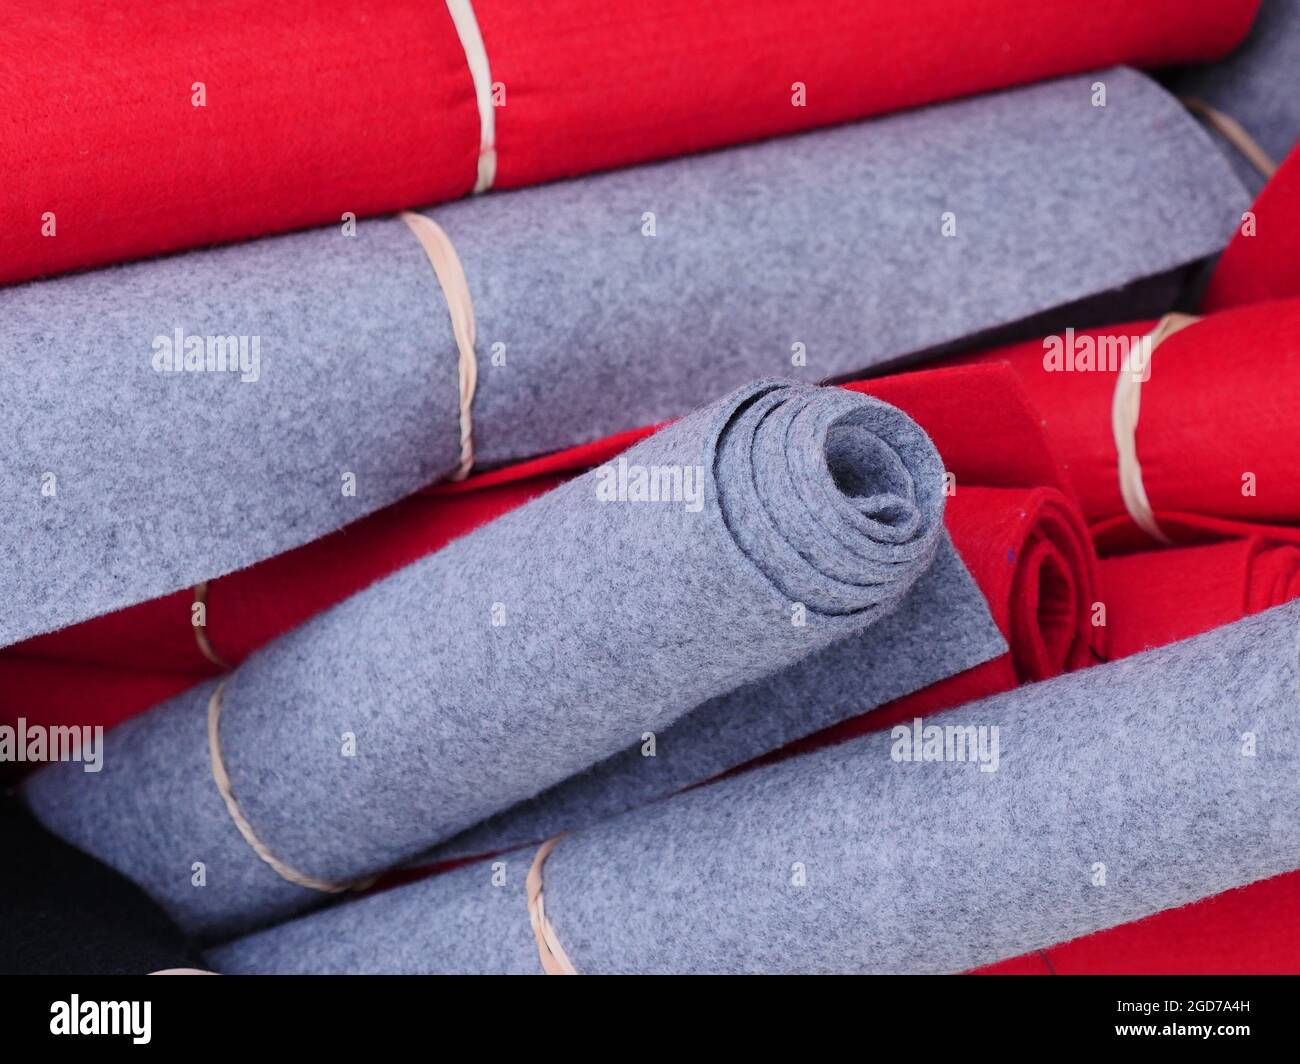 alfombrillas rojas y grises atadas con una cuerda, almacenadas mezcladas. Foto de stock